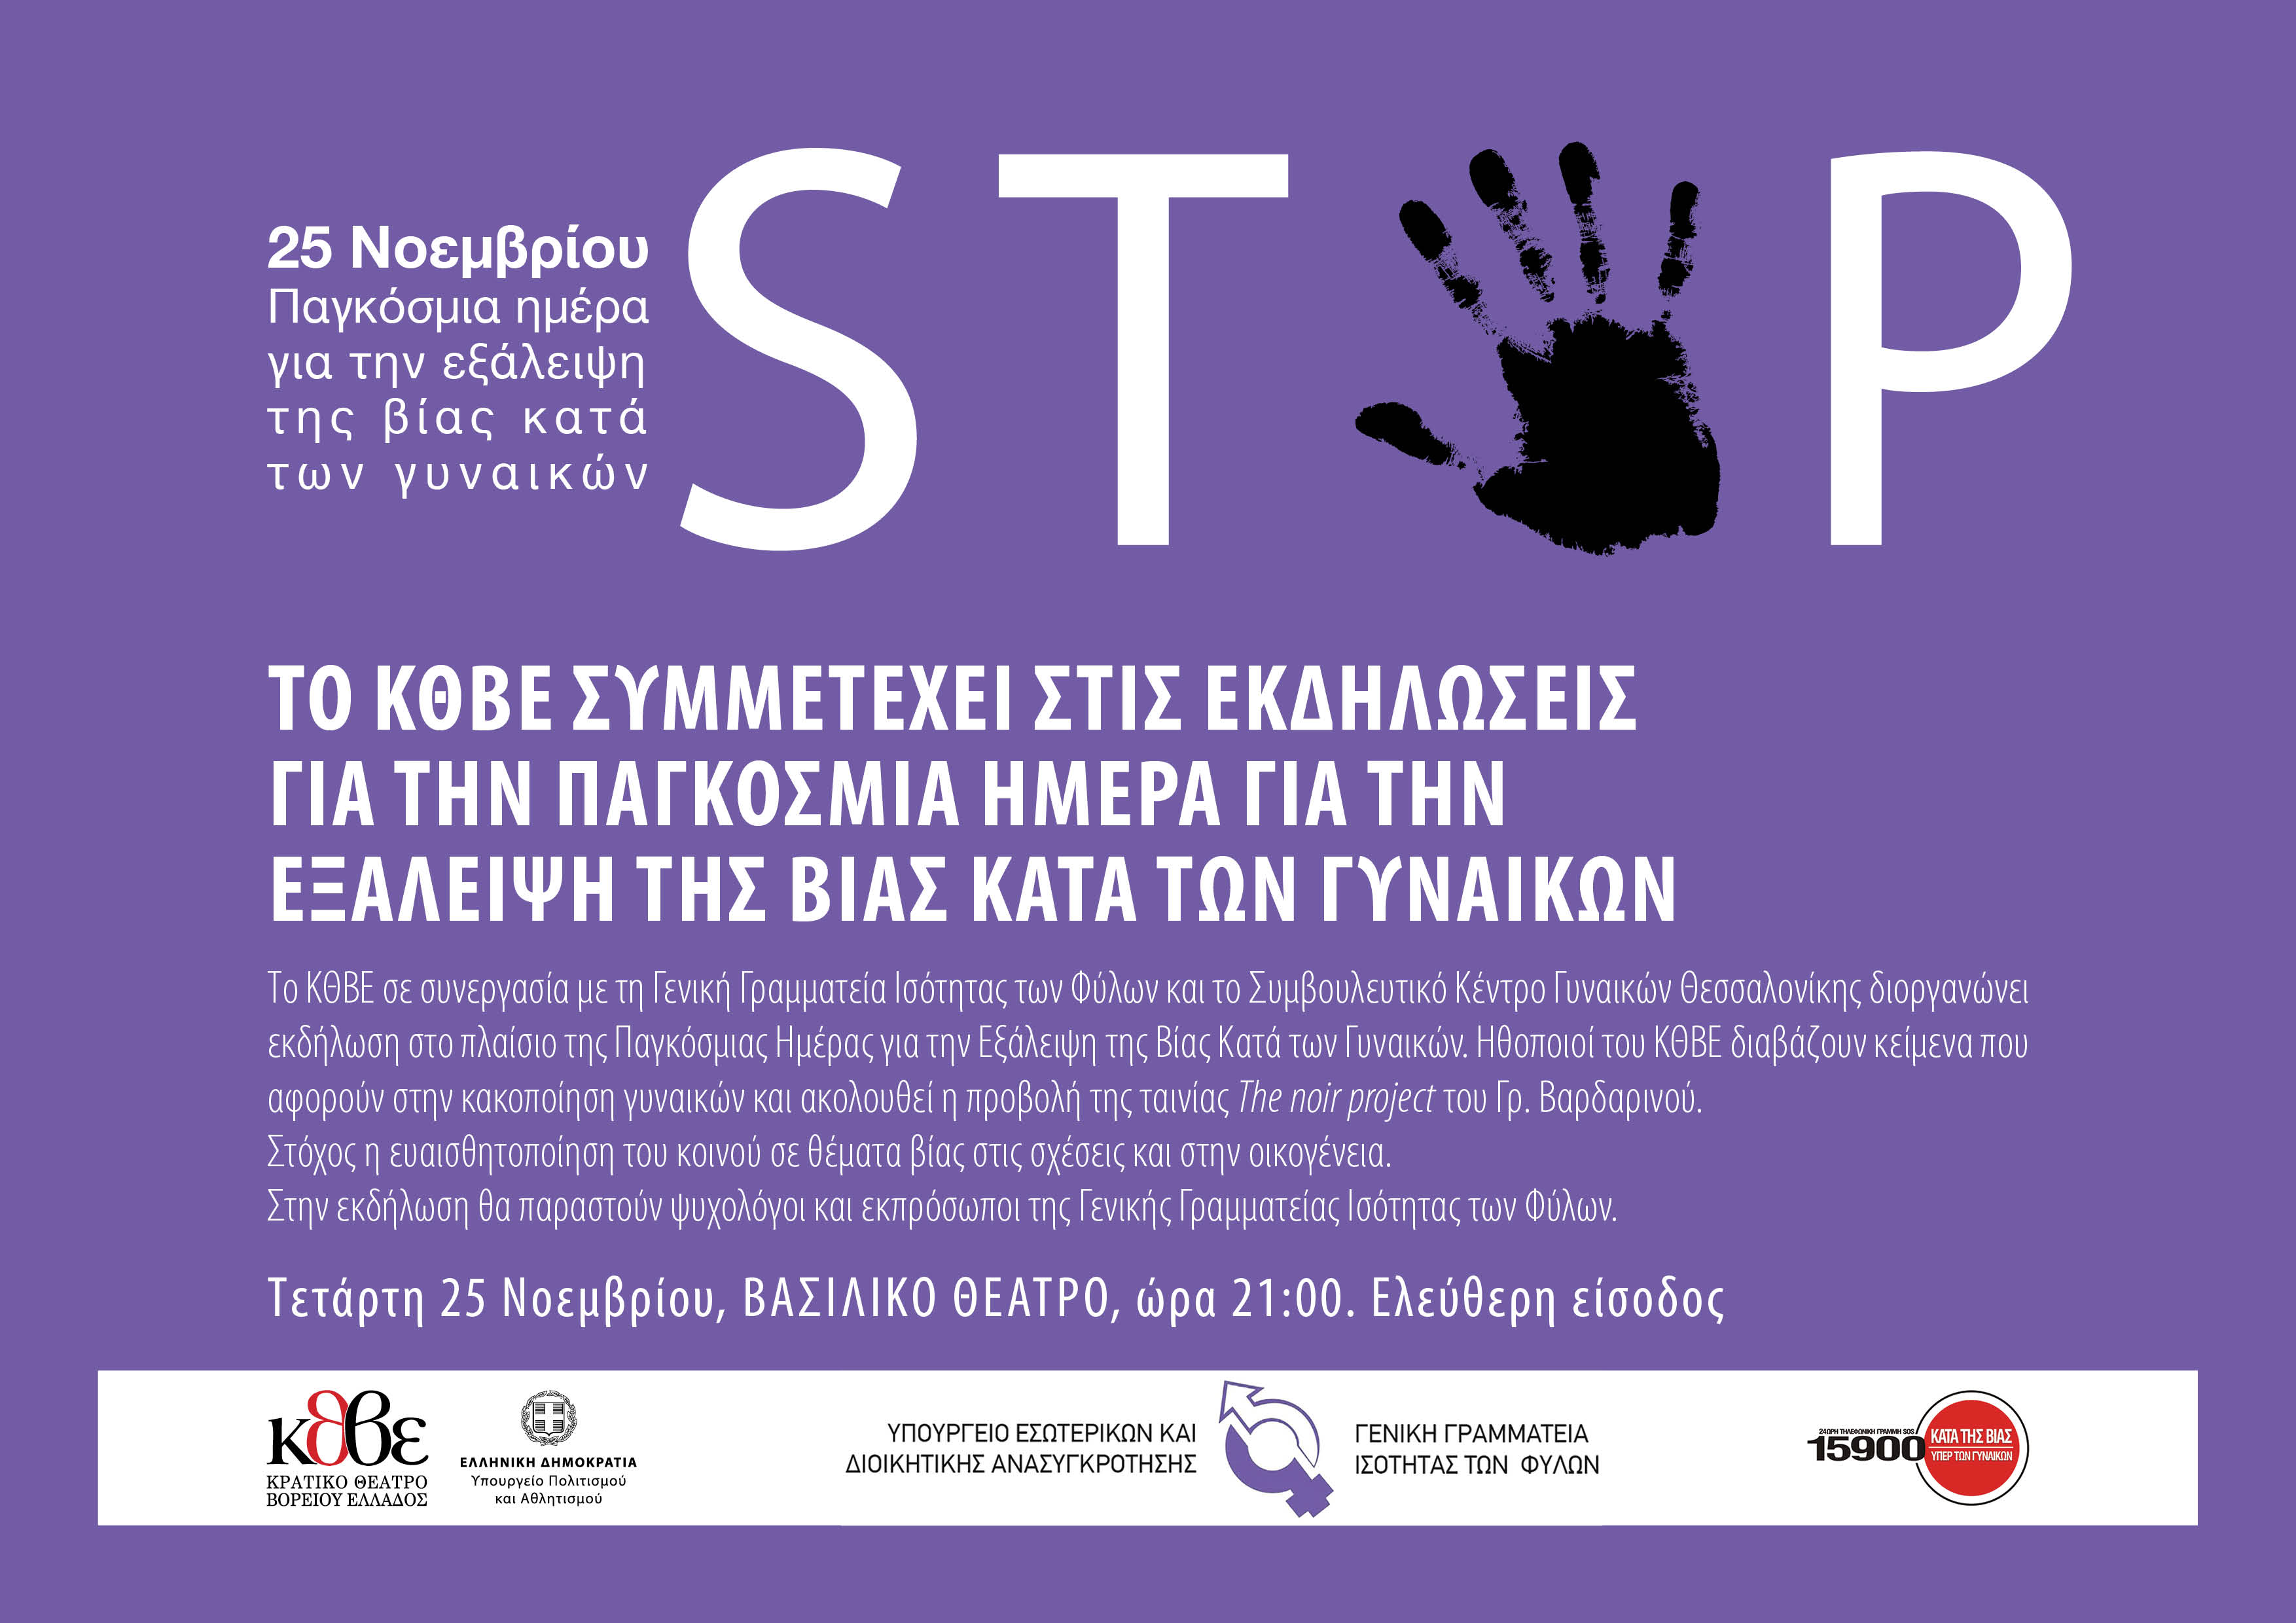 Συμμετοχή του ΚΘΒΕ στις Εκδηλώσεις για την Παγκόσμια Ημέρα για την Εξάλειψη της Βίας Κατά των Γυναικών